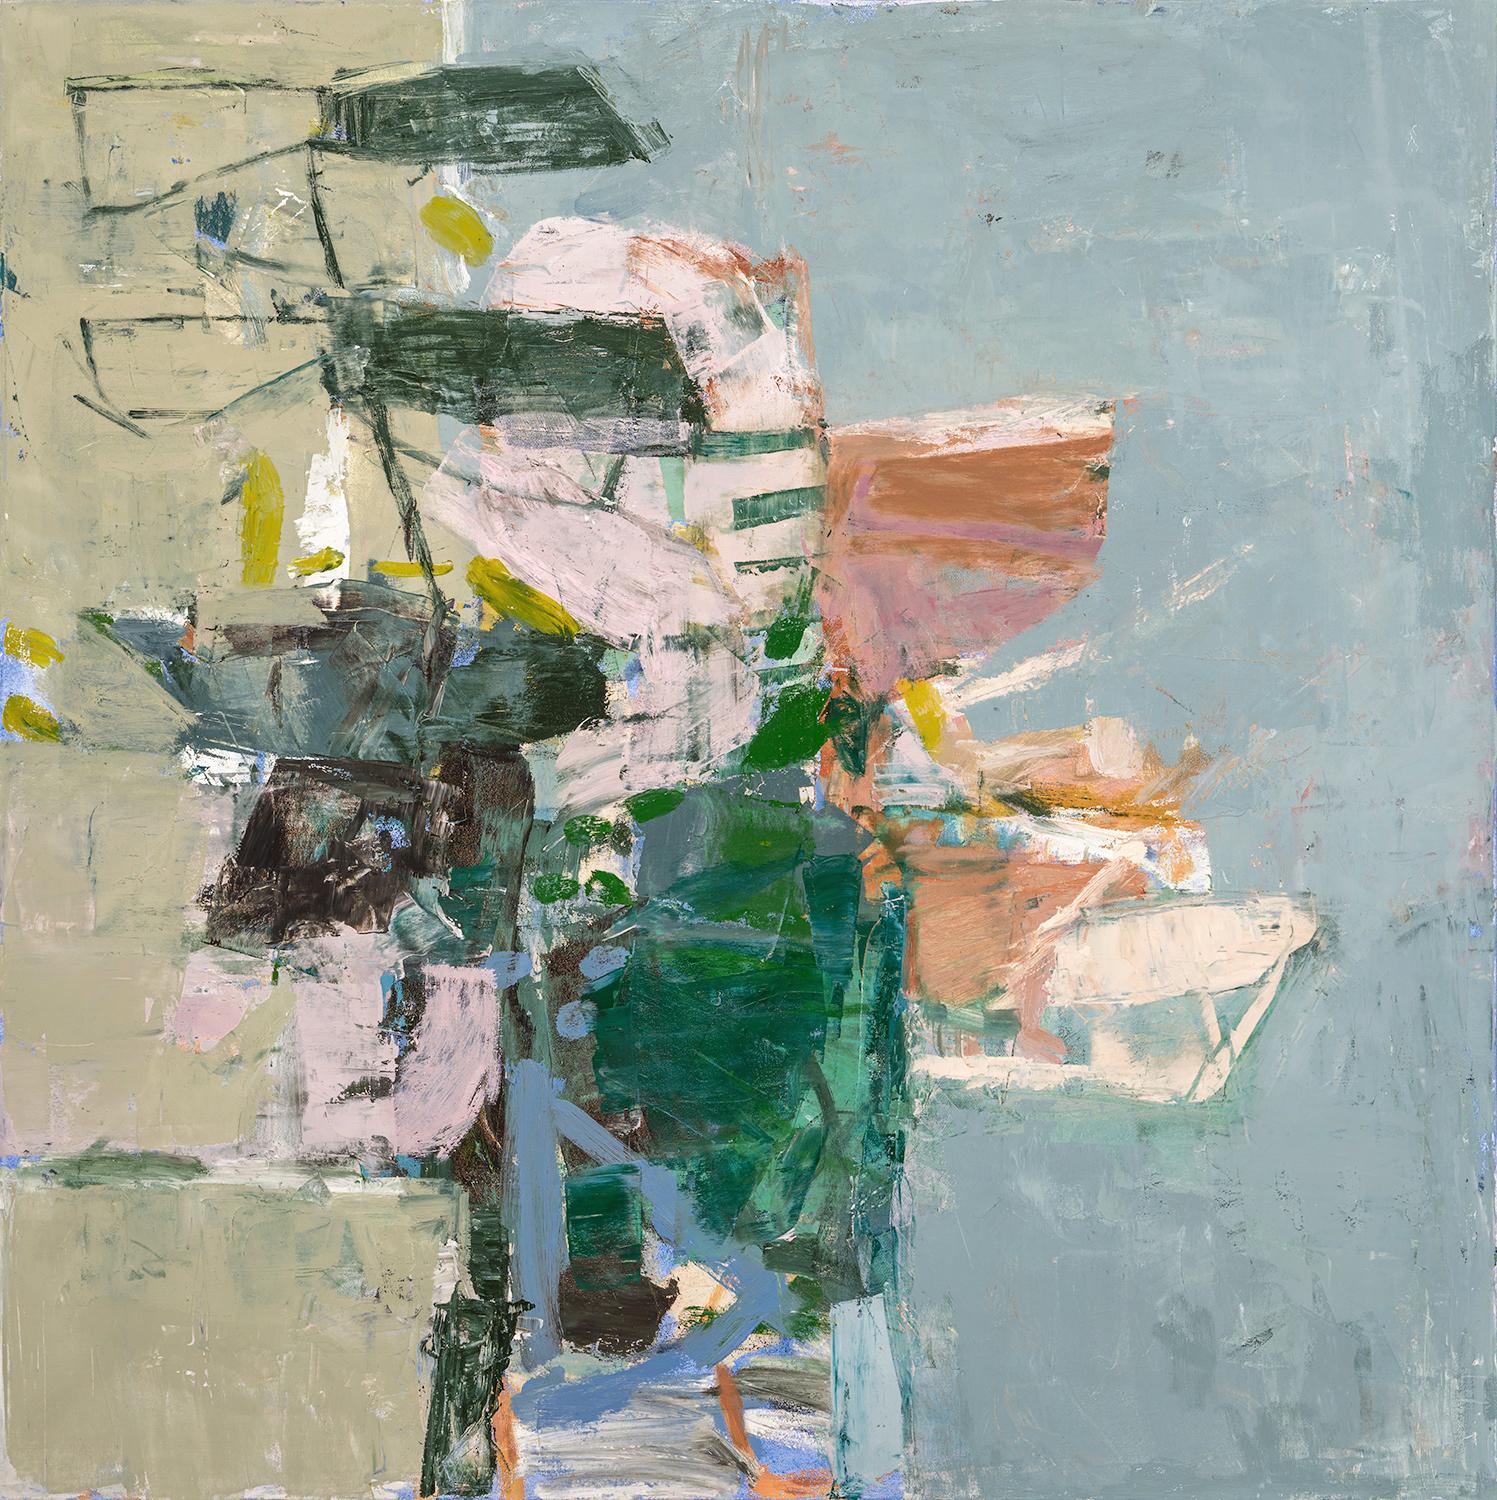 Jenny Nelson Still-Life Painting – Meet June (Abstrakte expressionistisches Ölgemälde auf Leinwand in Grau, Rosa und Grün)